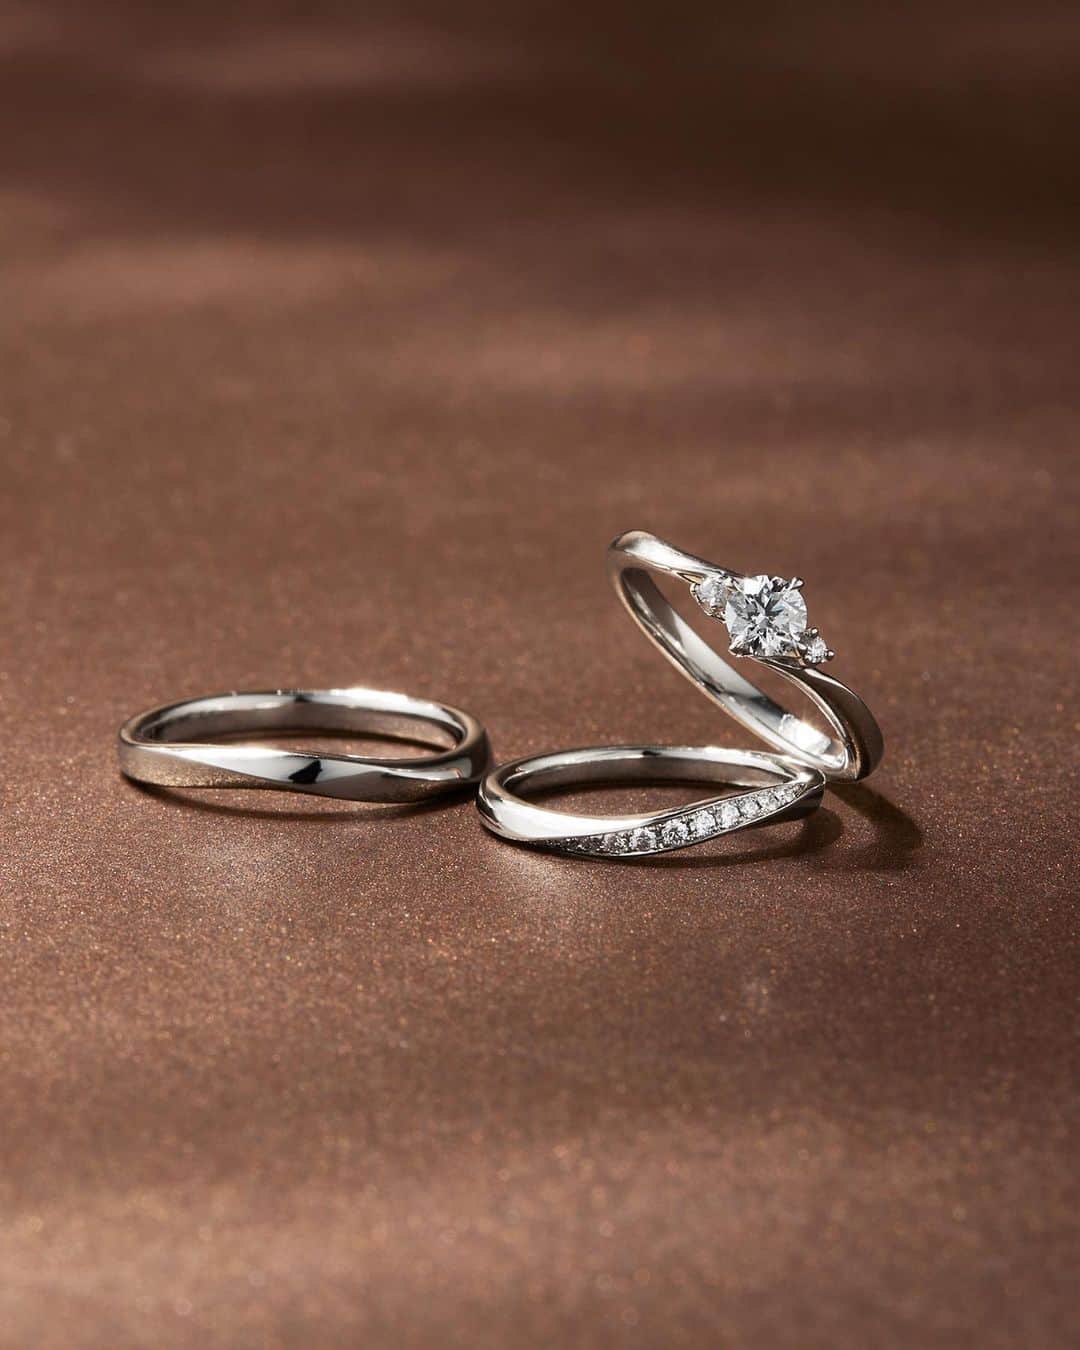 婚約・結婚指輪のI-PRIMO（アイプリモ）公式アカウントのインスタグラム：「両サイドにメレダイヤモンドを配した 華やかなきらめきのエンゲージリング「キタルファ」  エレガントなウェーブラインにメレダイヤモンドを敷きつめた マリッジリング「アルチェステ」  センターダイヤモンドはカットの最高評価である「3Excellent」を使用しており、 マリッジリングなどの直径1㎜以下の小さなメレダイヤモンドも 厳格な品質基準で選定。  流麗なダイヤモンドの輝きの連鎖が 花嫁の指もとを鮮やかに彩ります。  ＜婚約指輪＞Kitalpha #アイプリモ_キタルファ ＜結婚指輪＞Alceste #アイプリモ_アルチェステ  ーーーーー ▼アイプリモでは、ご好評のパーソナルハンド診断®を体験いただけます。 ご希望の方はホームページより来店予約をいただくとスムーズにご案内いたします。 @iprimo_official ーーーーー  #iprimo #アイプリモ #婚約指輪 #エンゲージリング #結婚指輪 #マリッジリング」